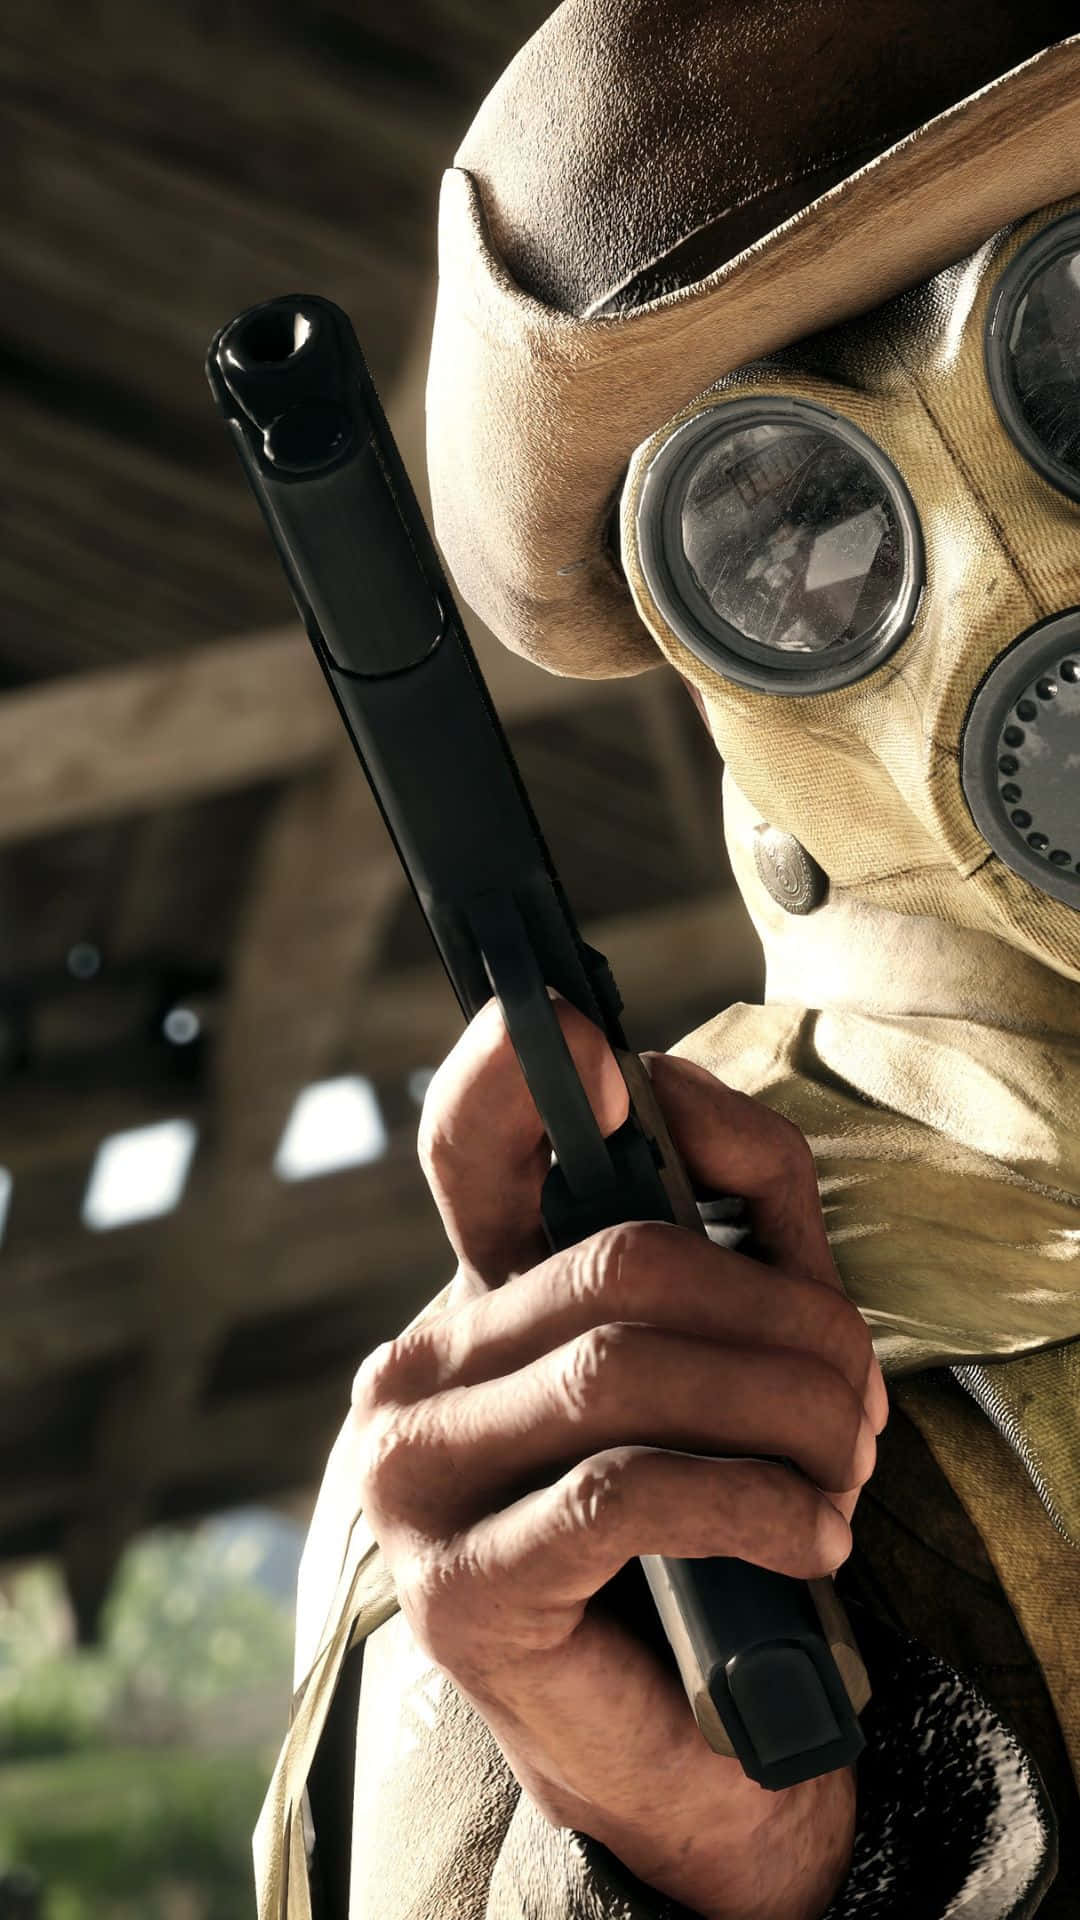 Androidbakgrundsbild För Battlefield 1 Med En Maskerad Soldat Som Håller En Pistol.